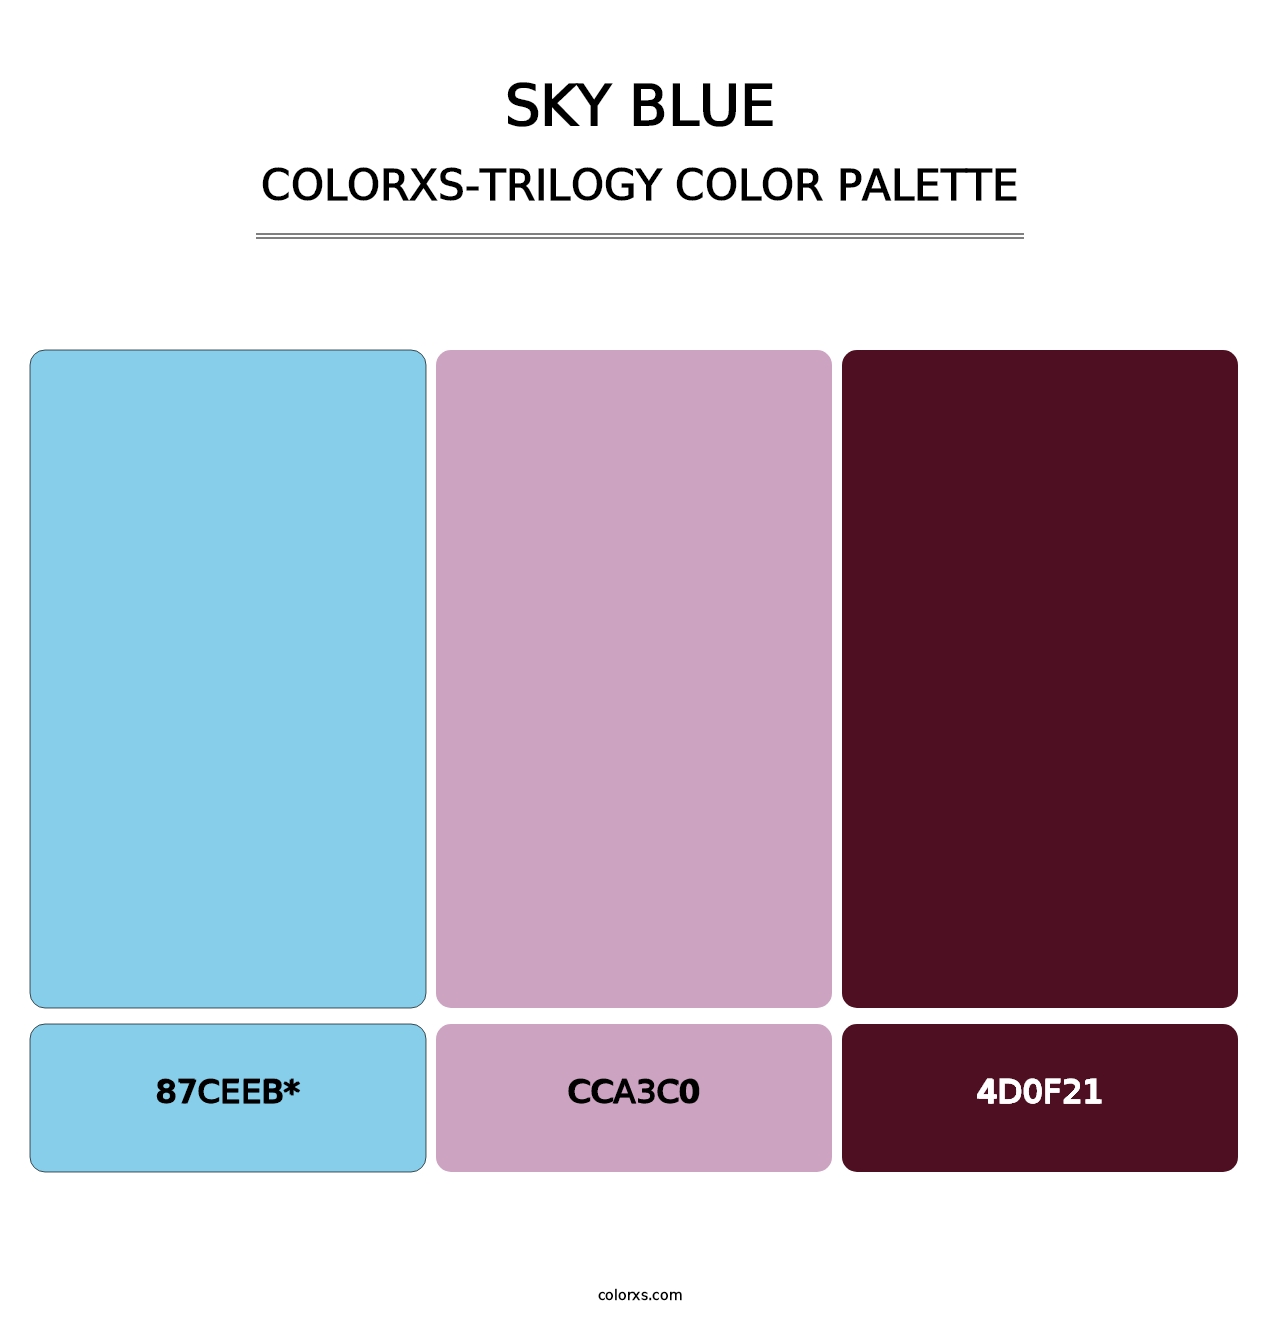 Sky blue - Colorxs Trilogy Palette